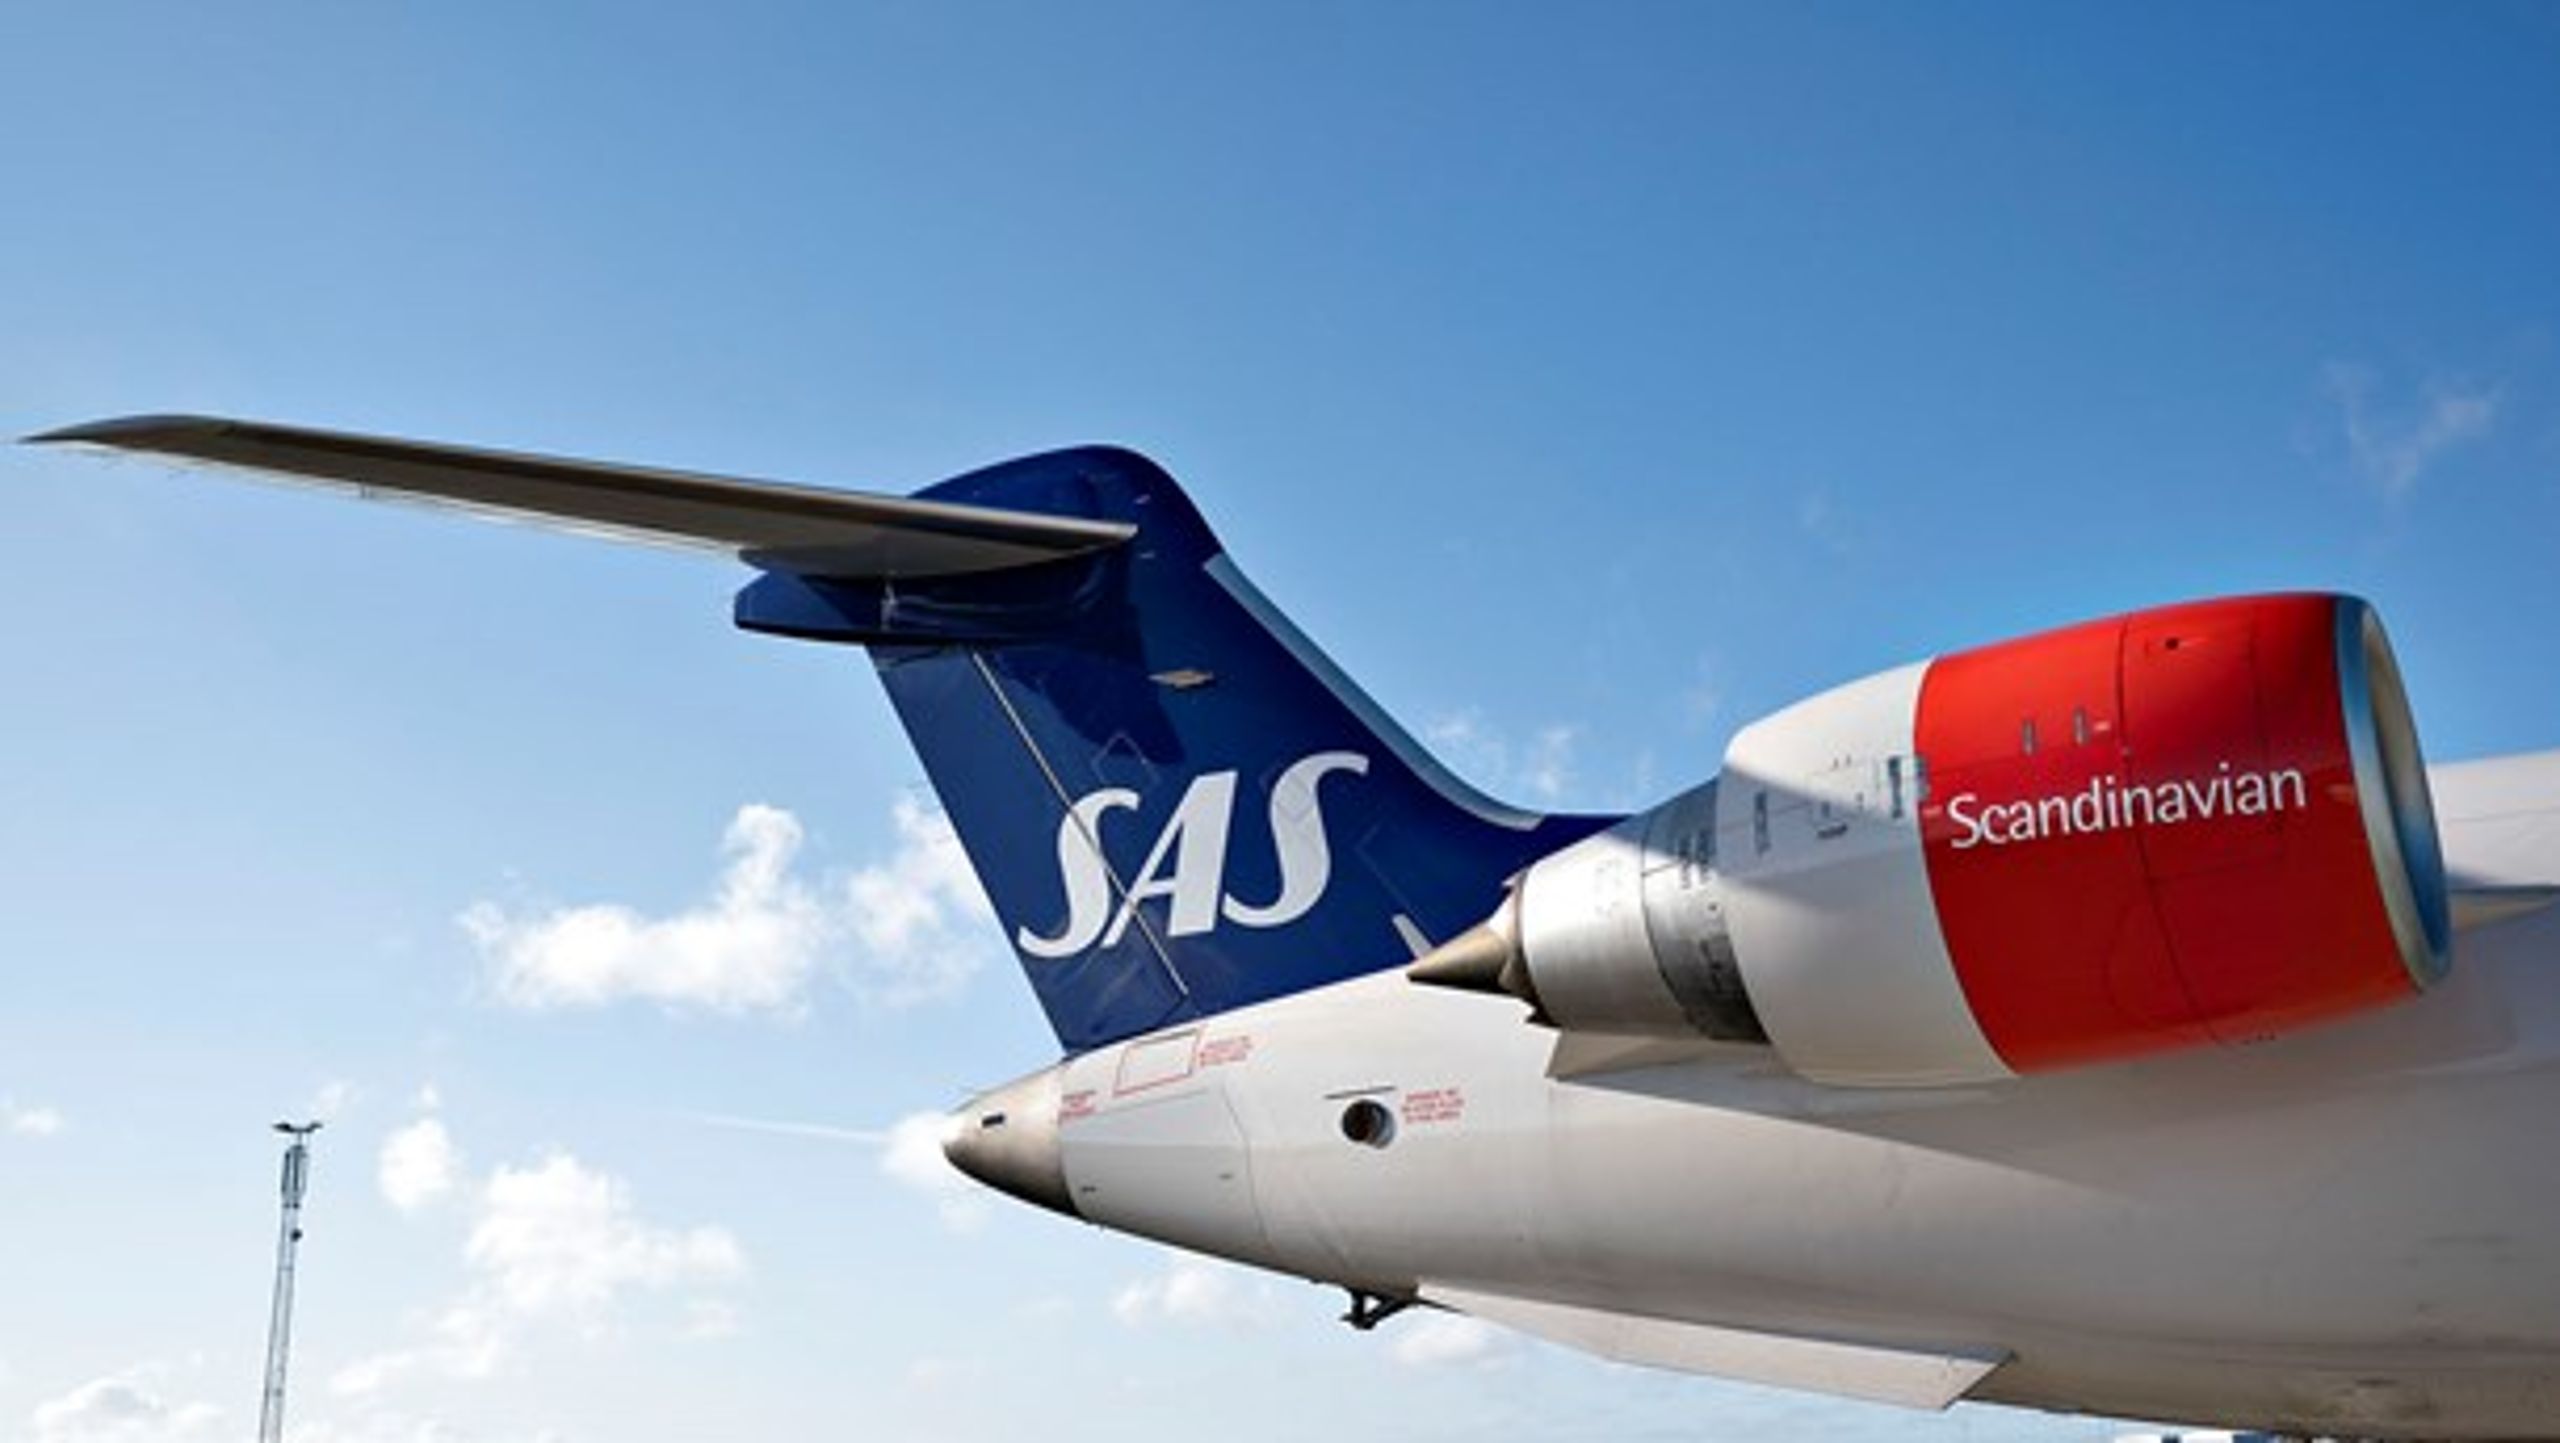 Coronakrisen har ramt flybranchen, hvor blandt andet SAS har sat størstedelen af virksomheden i bero og afskediget 90 procent af de ansatte.